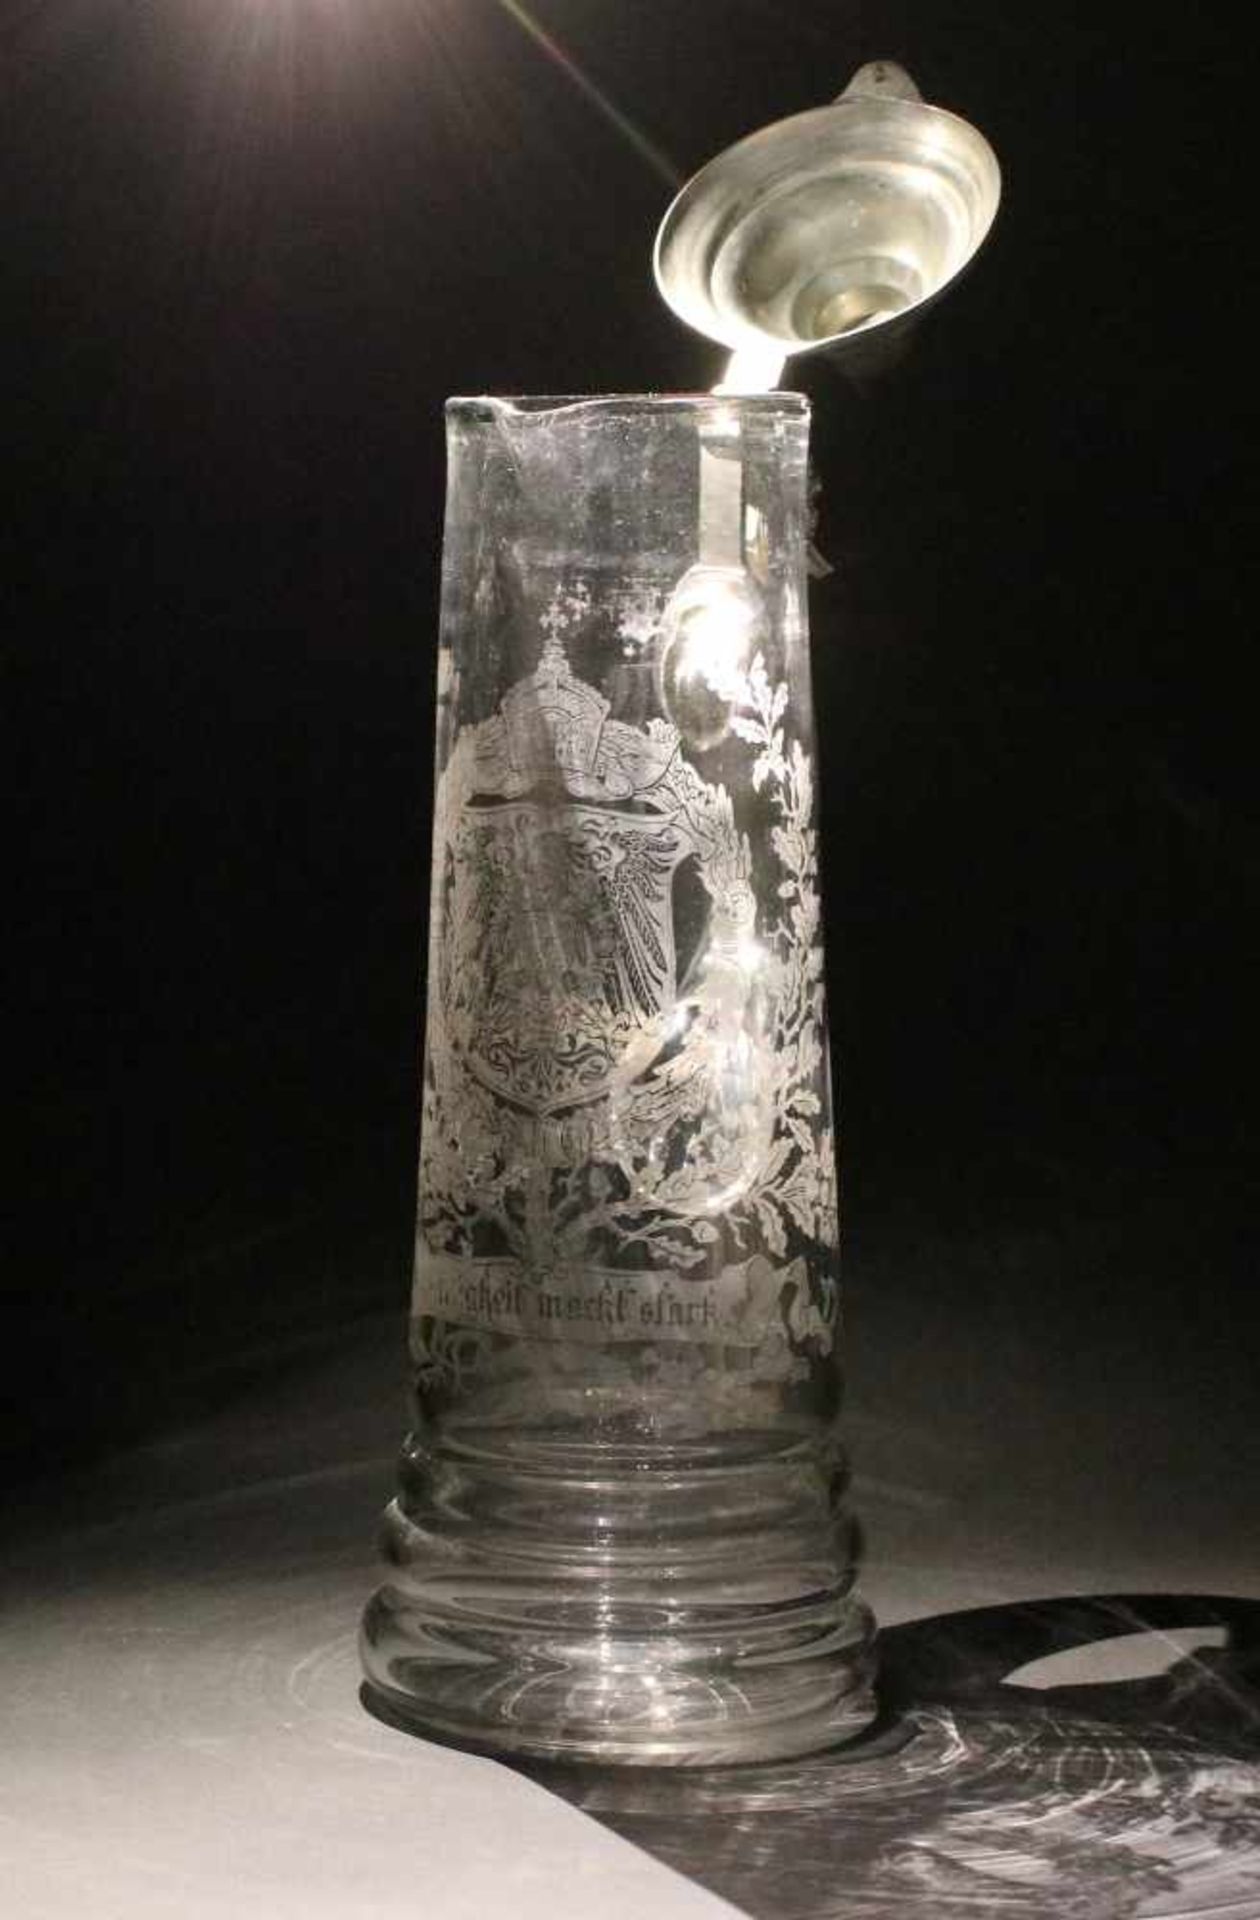 Schenkkrug Historismusdatiert 1894, farbloses Glas mundgeblasen mit Bodenabriss, schauseits - Bild 2 aus 3